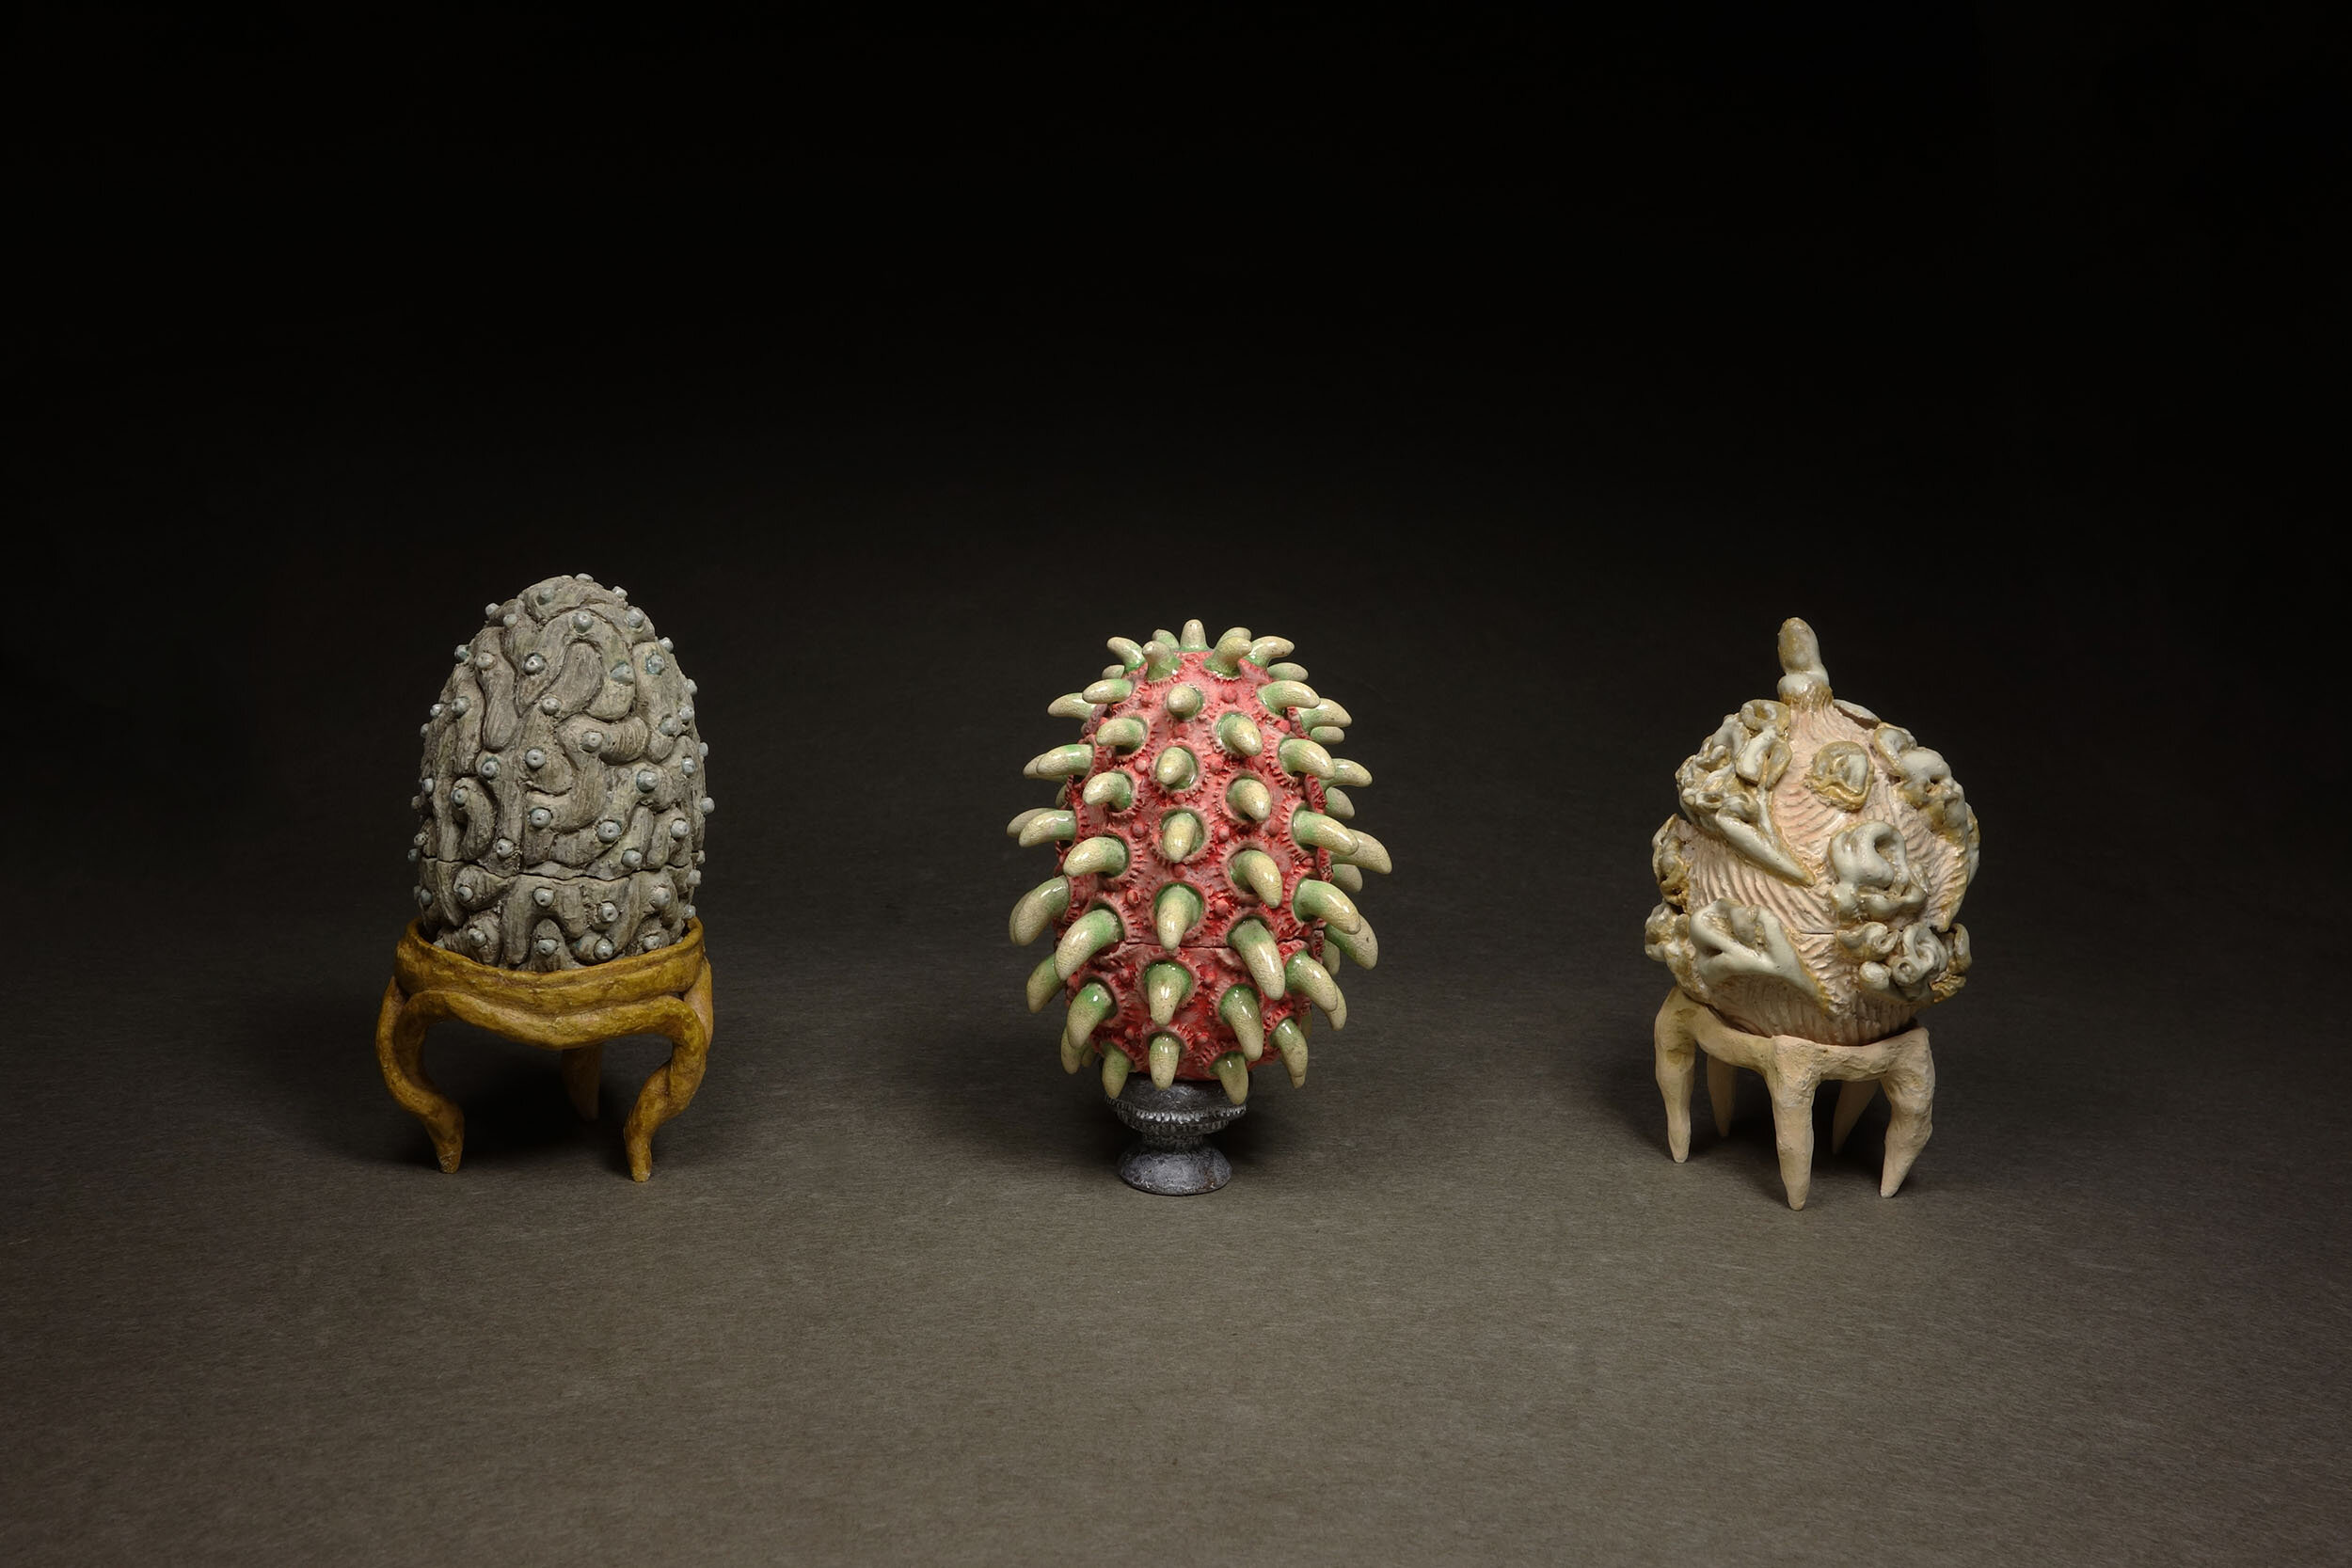   Fabergé Eggs , Ceramic Sculpture: 2015, glazed ceramic 